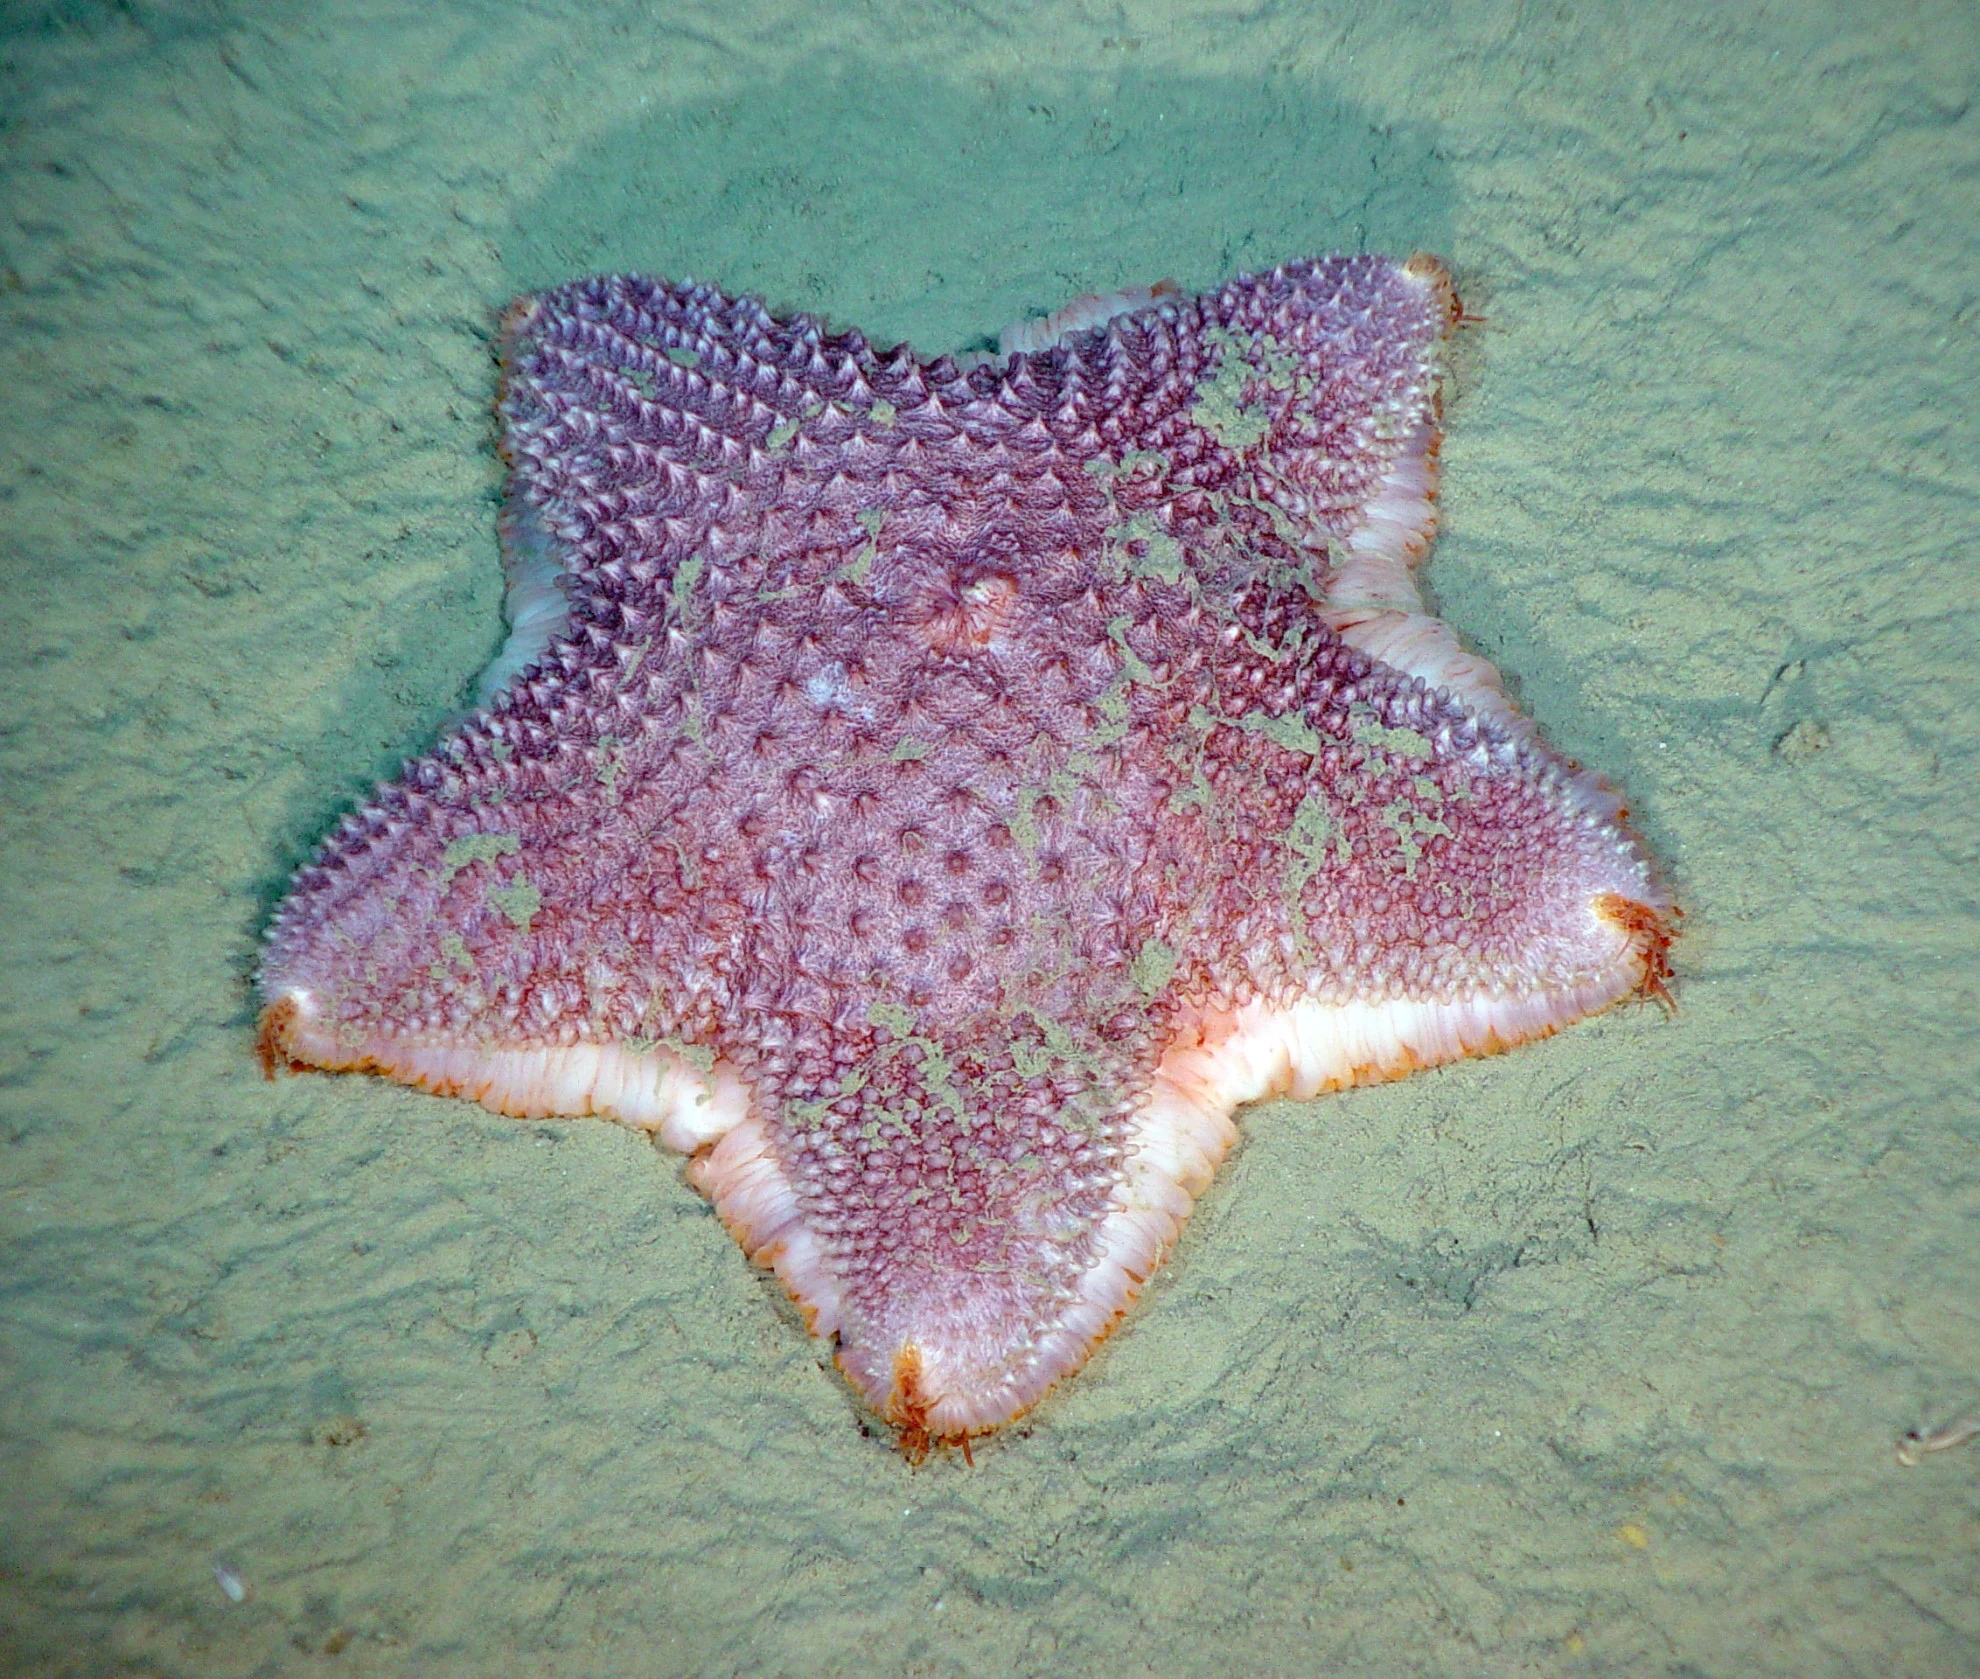 DFO - Gully starfish